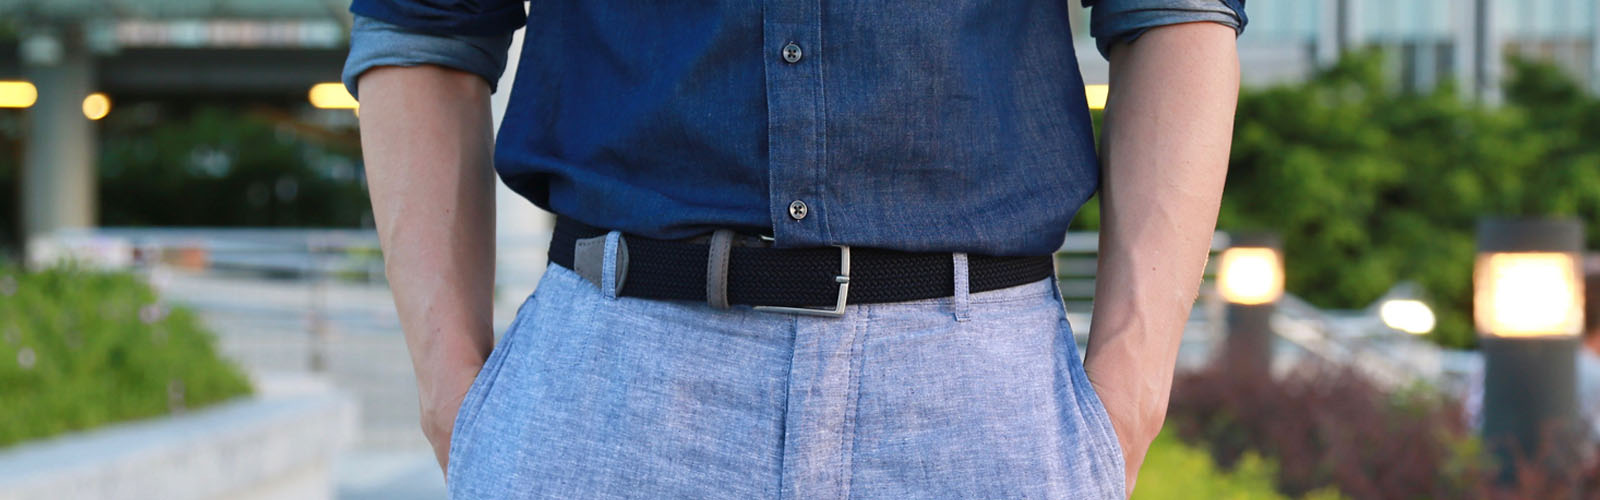 Vegan belts and suspenders